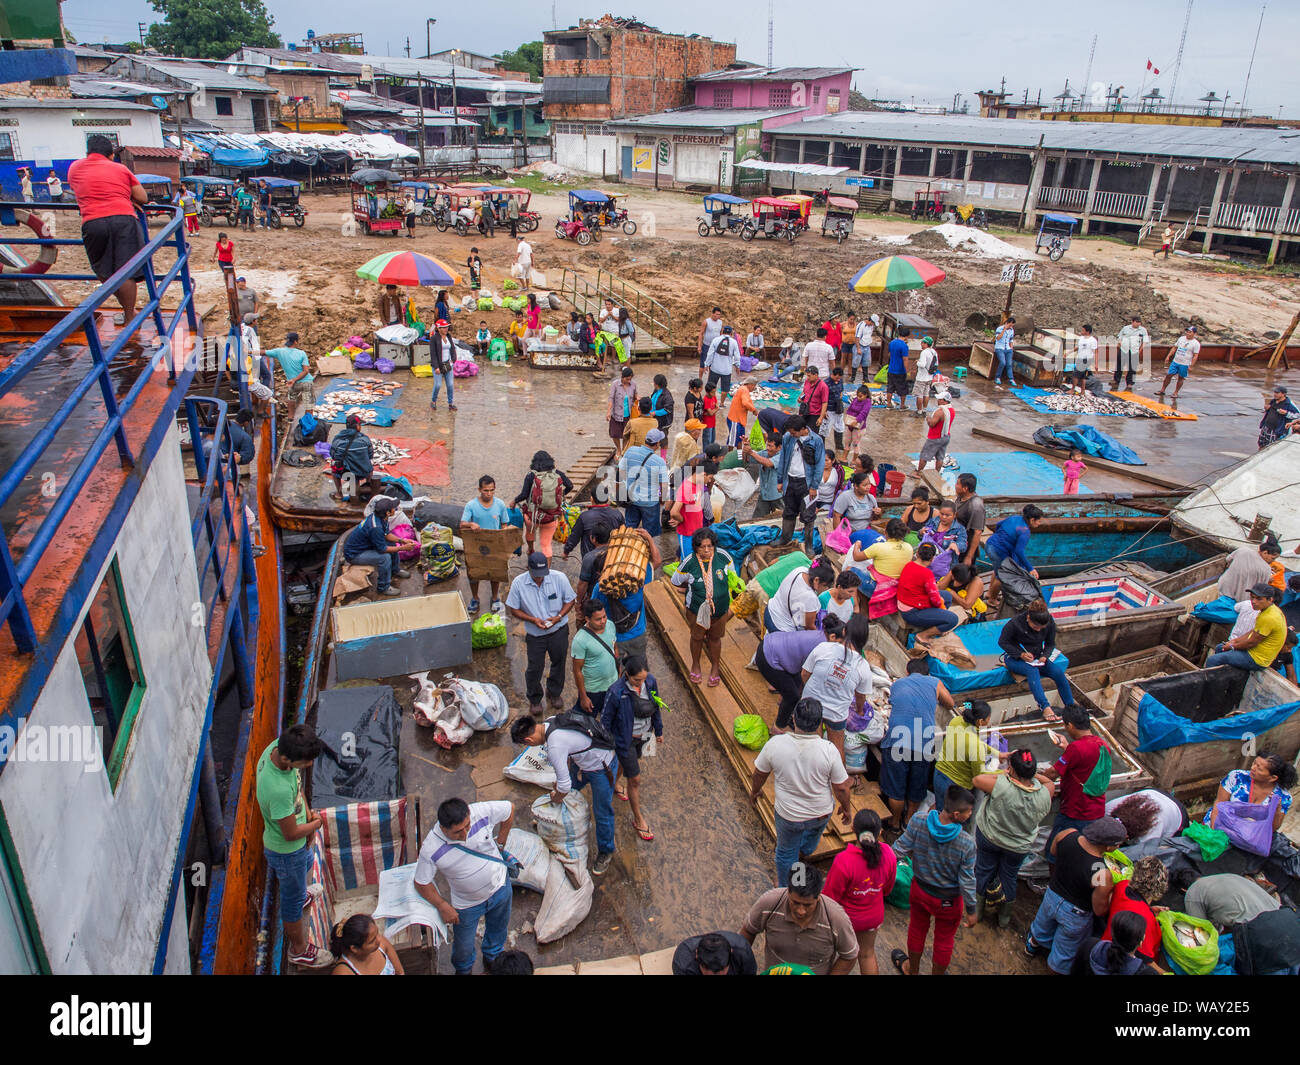 Iquitos, Peru - 14. Mai 2016: Eine Masse von Menschen vor Ort auf einem Brett cargo Schiff und einem schlammigen Küste von einem Port, über den Amazonas in Iguitos. Amazonia. S Stockfoto